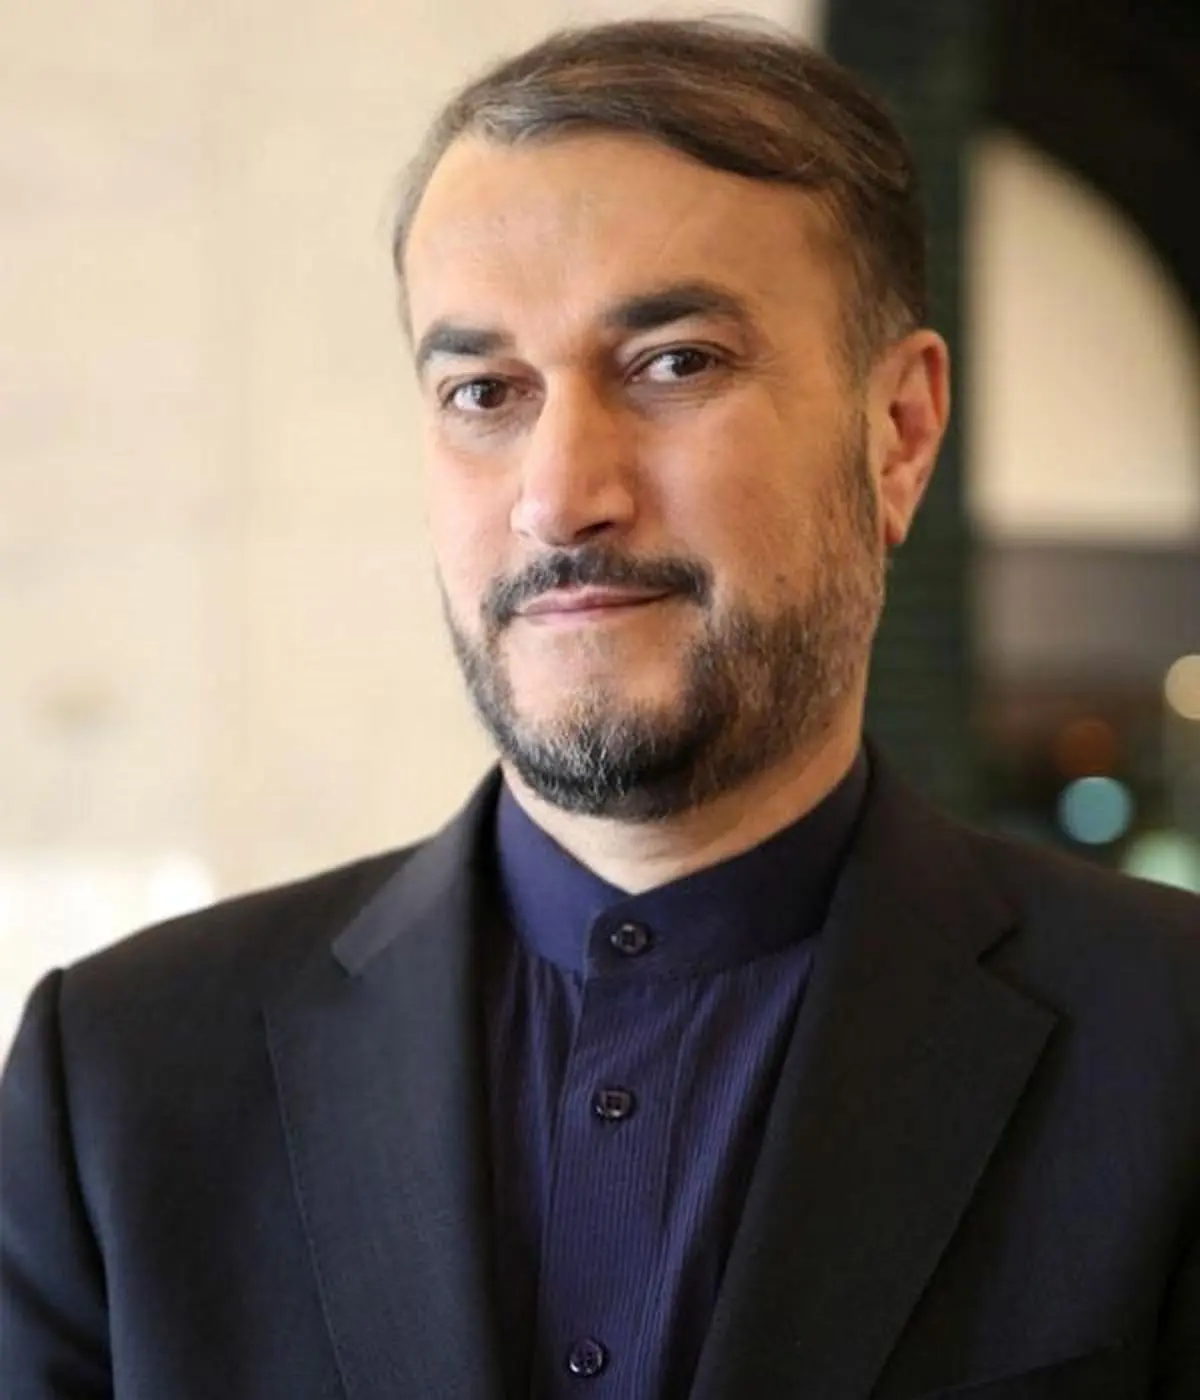 سخنرانی وزیر امور خارجه در ارمنستان | حسین امیرعبداللهیان : مرگ مهسا همه را متاثر کرد